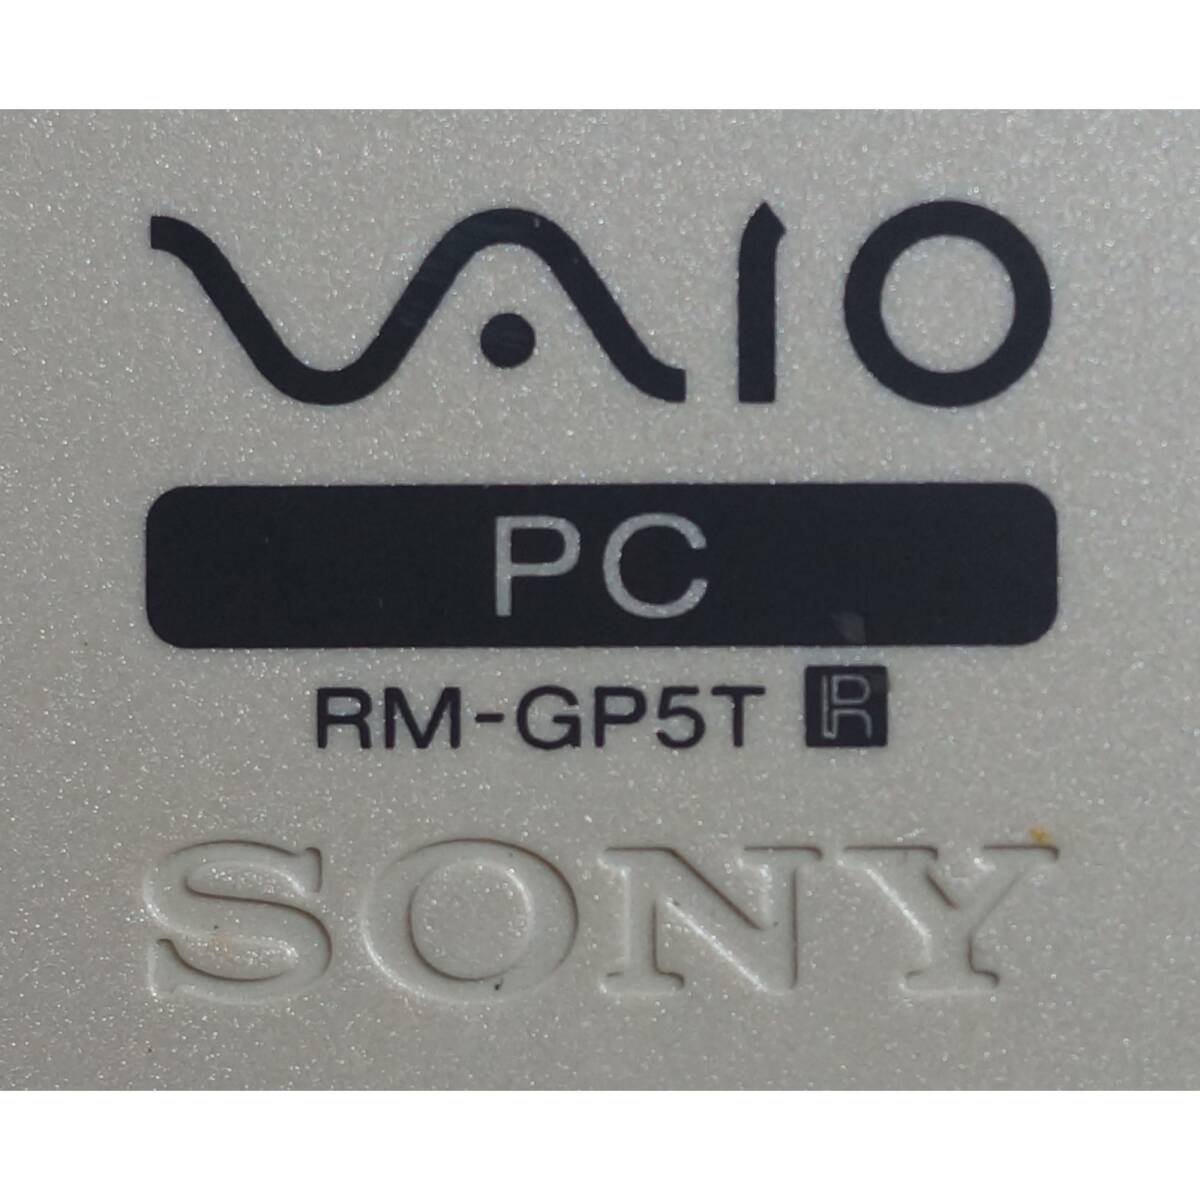 ソニー SONY PC リモコン RM-GP5T *